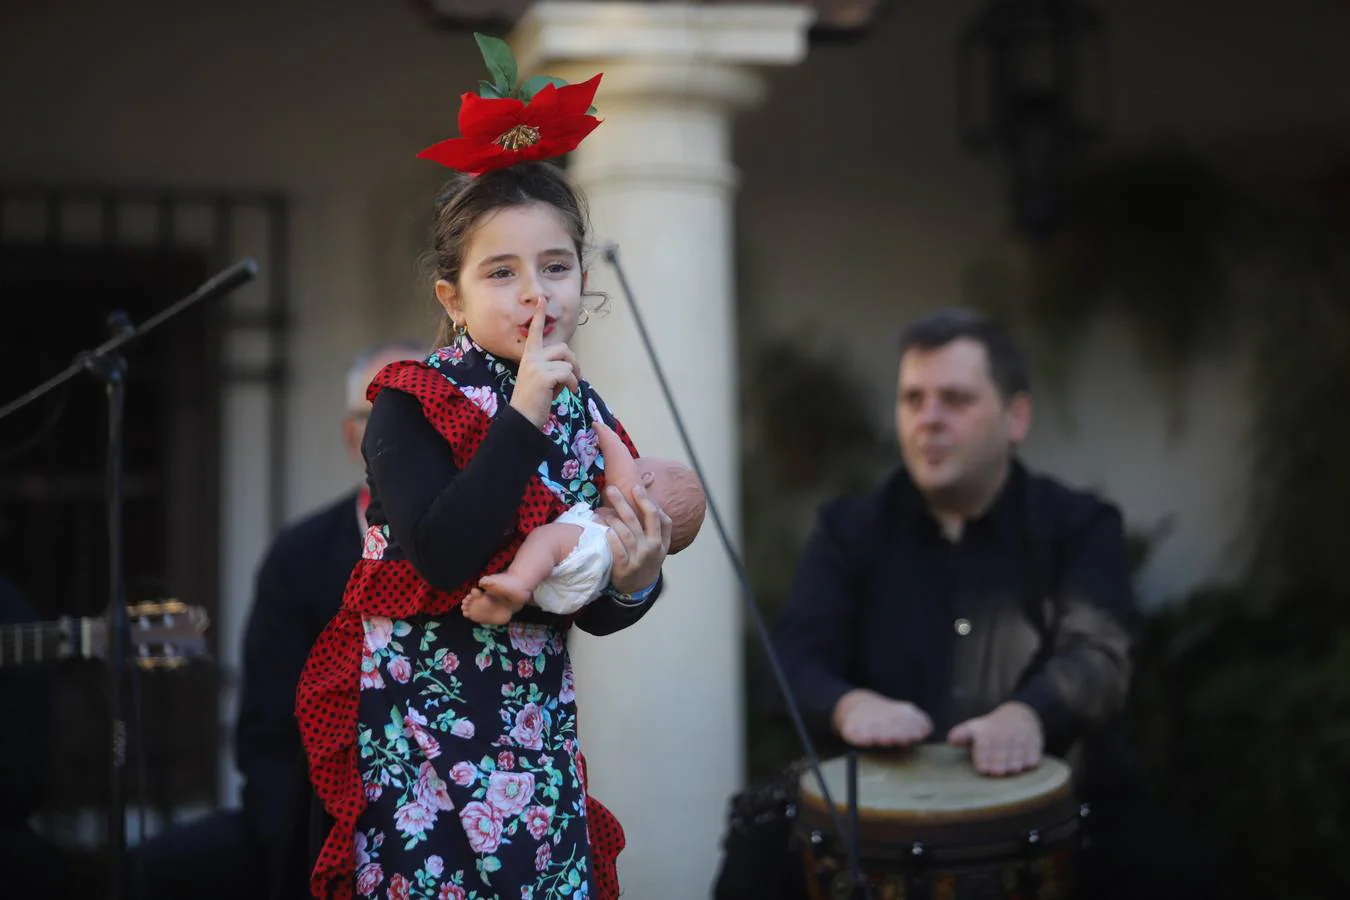 La zambomba flamenca empieza a sonar en Córdoba, en imágenes